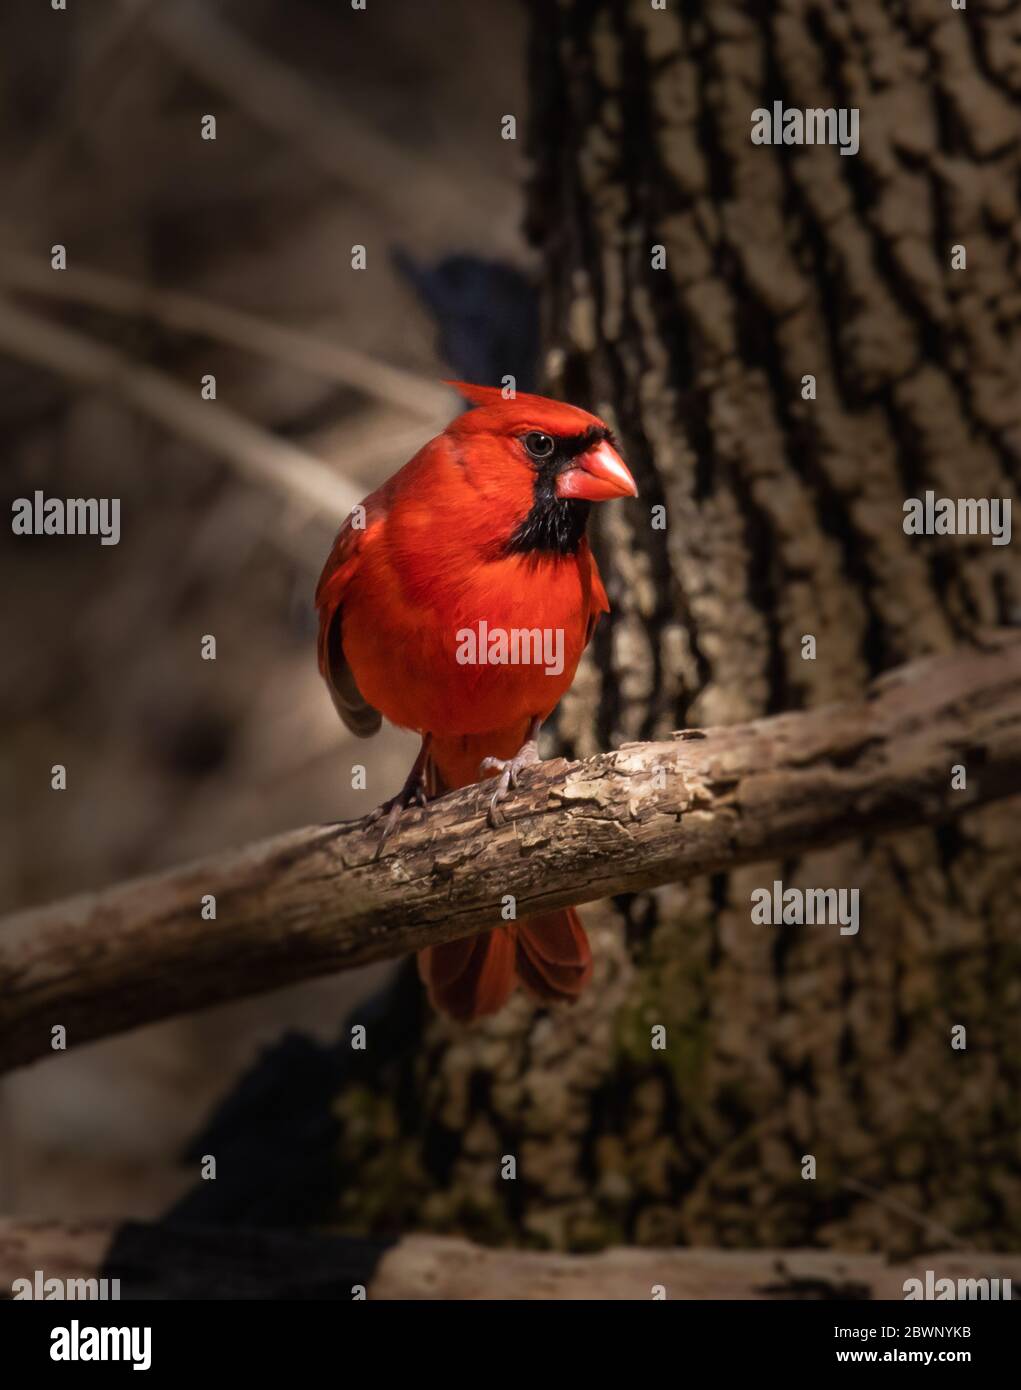 Ritratto di un cardinale maschio rosso brillante in un thicket che si acciglia al fotografo Foto Stock